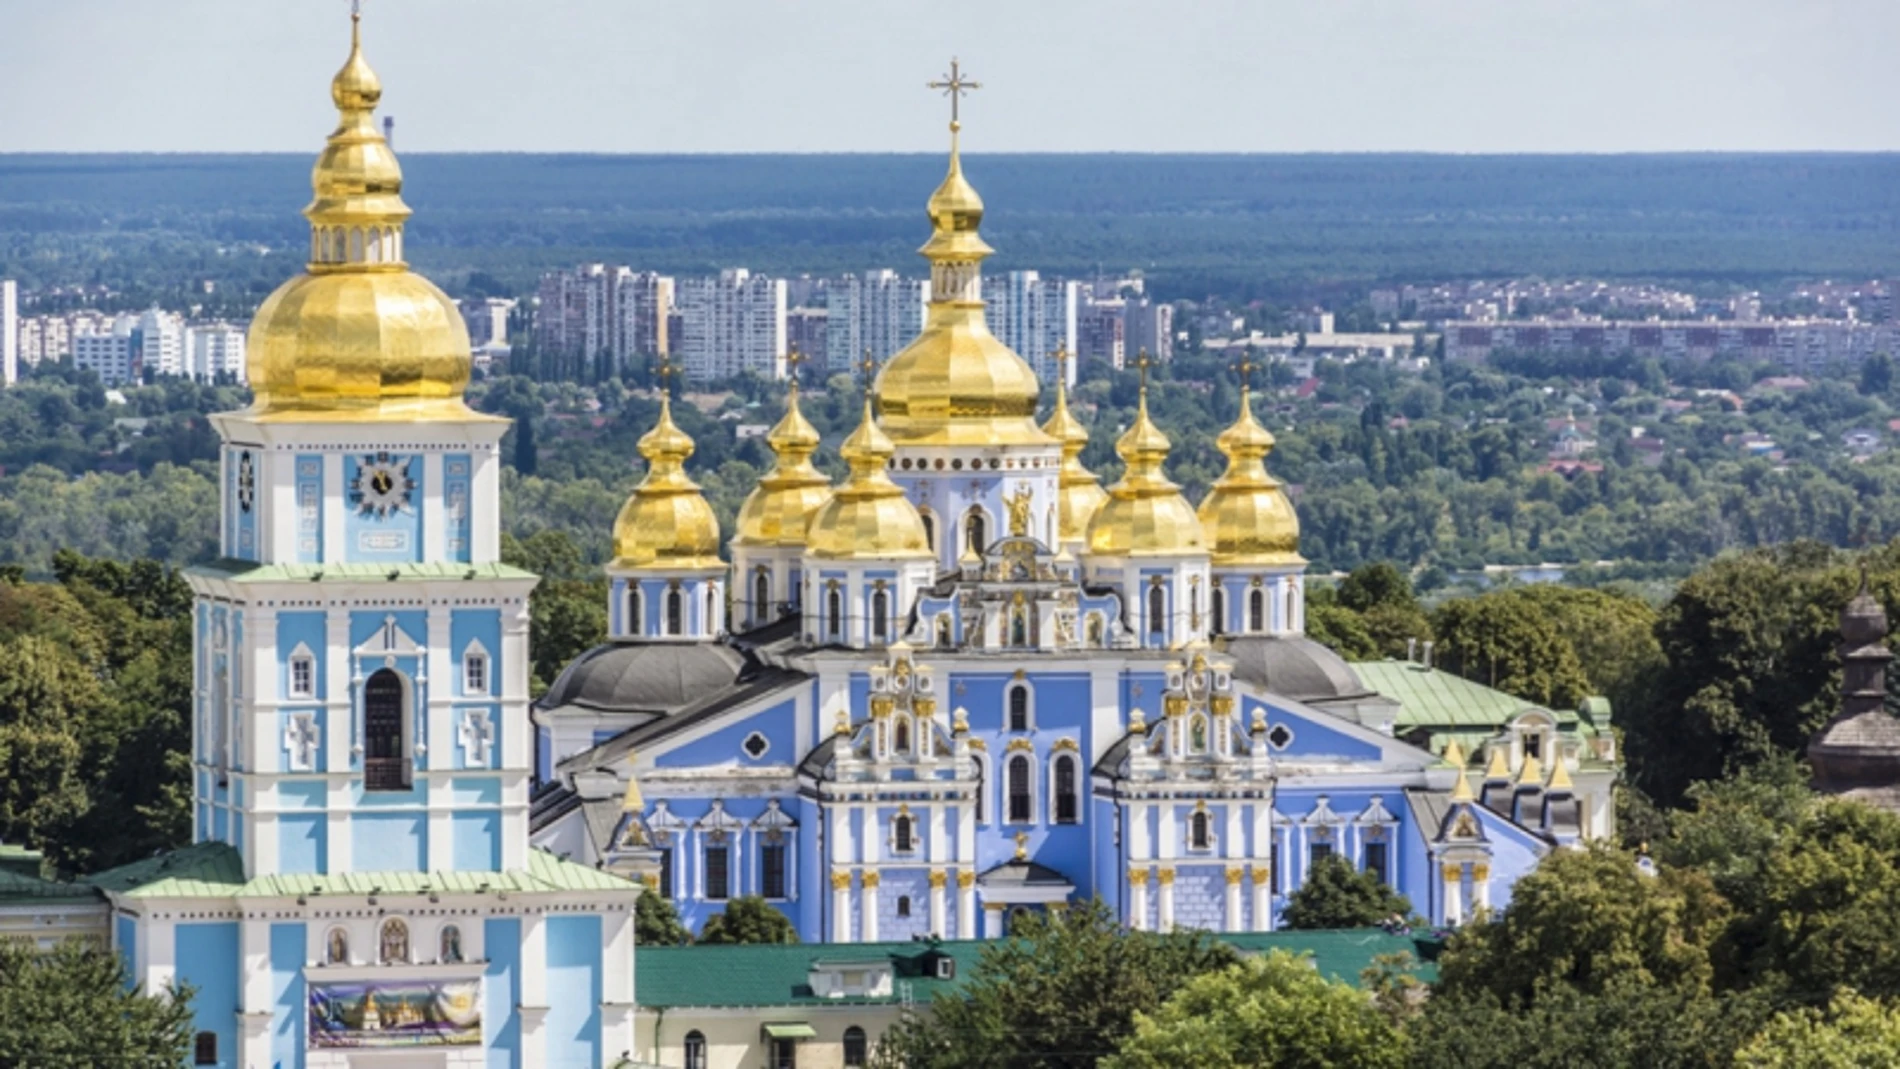 Monasterio de San Miguel de las Cúpulas Doradas (Kiev)